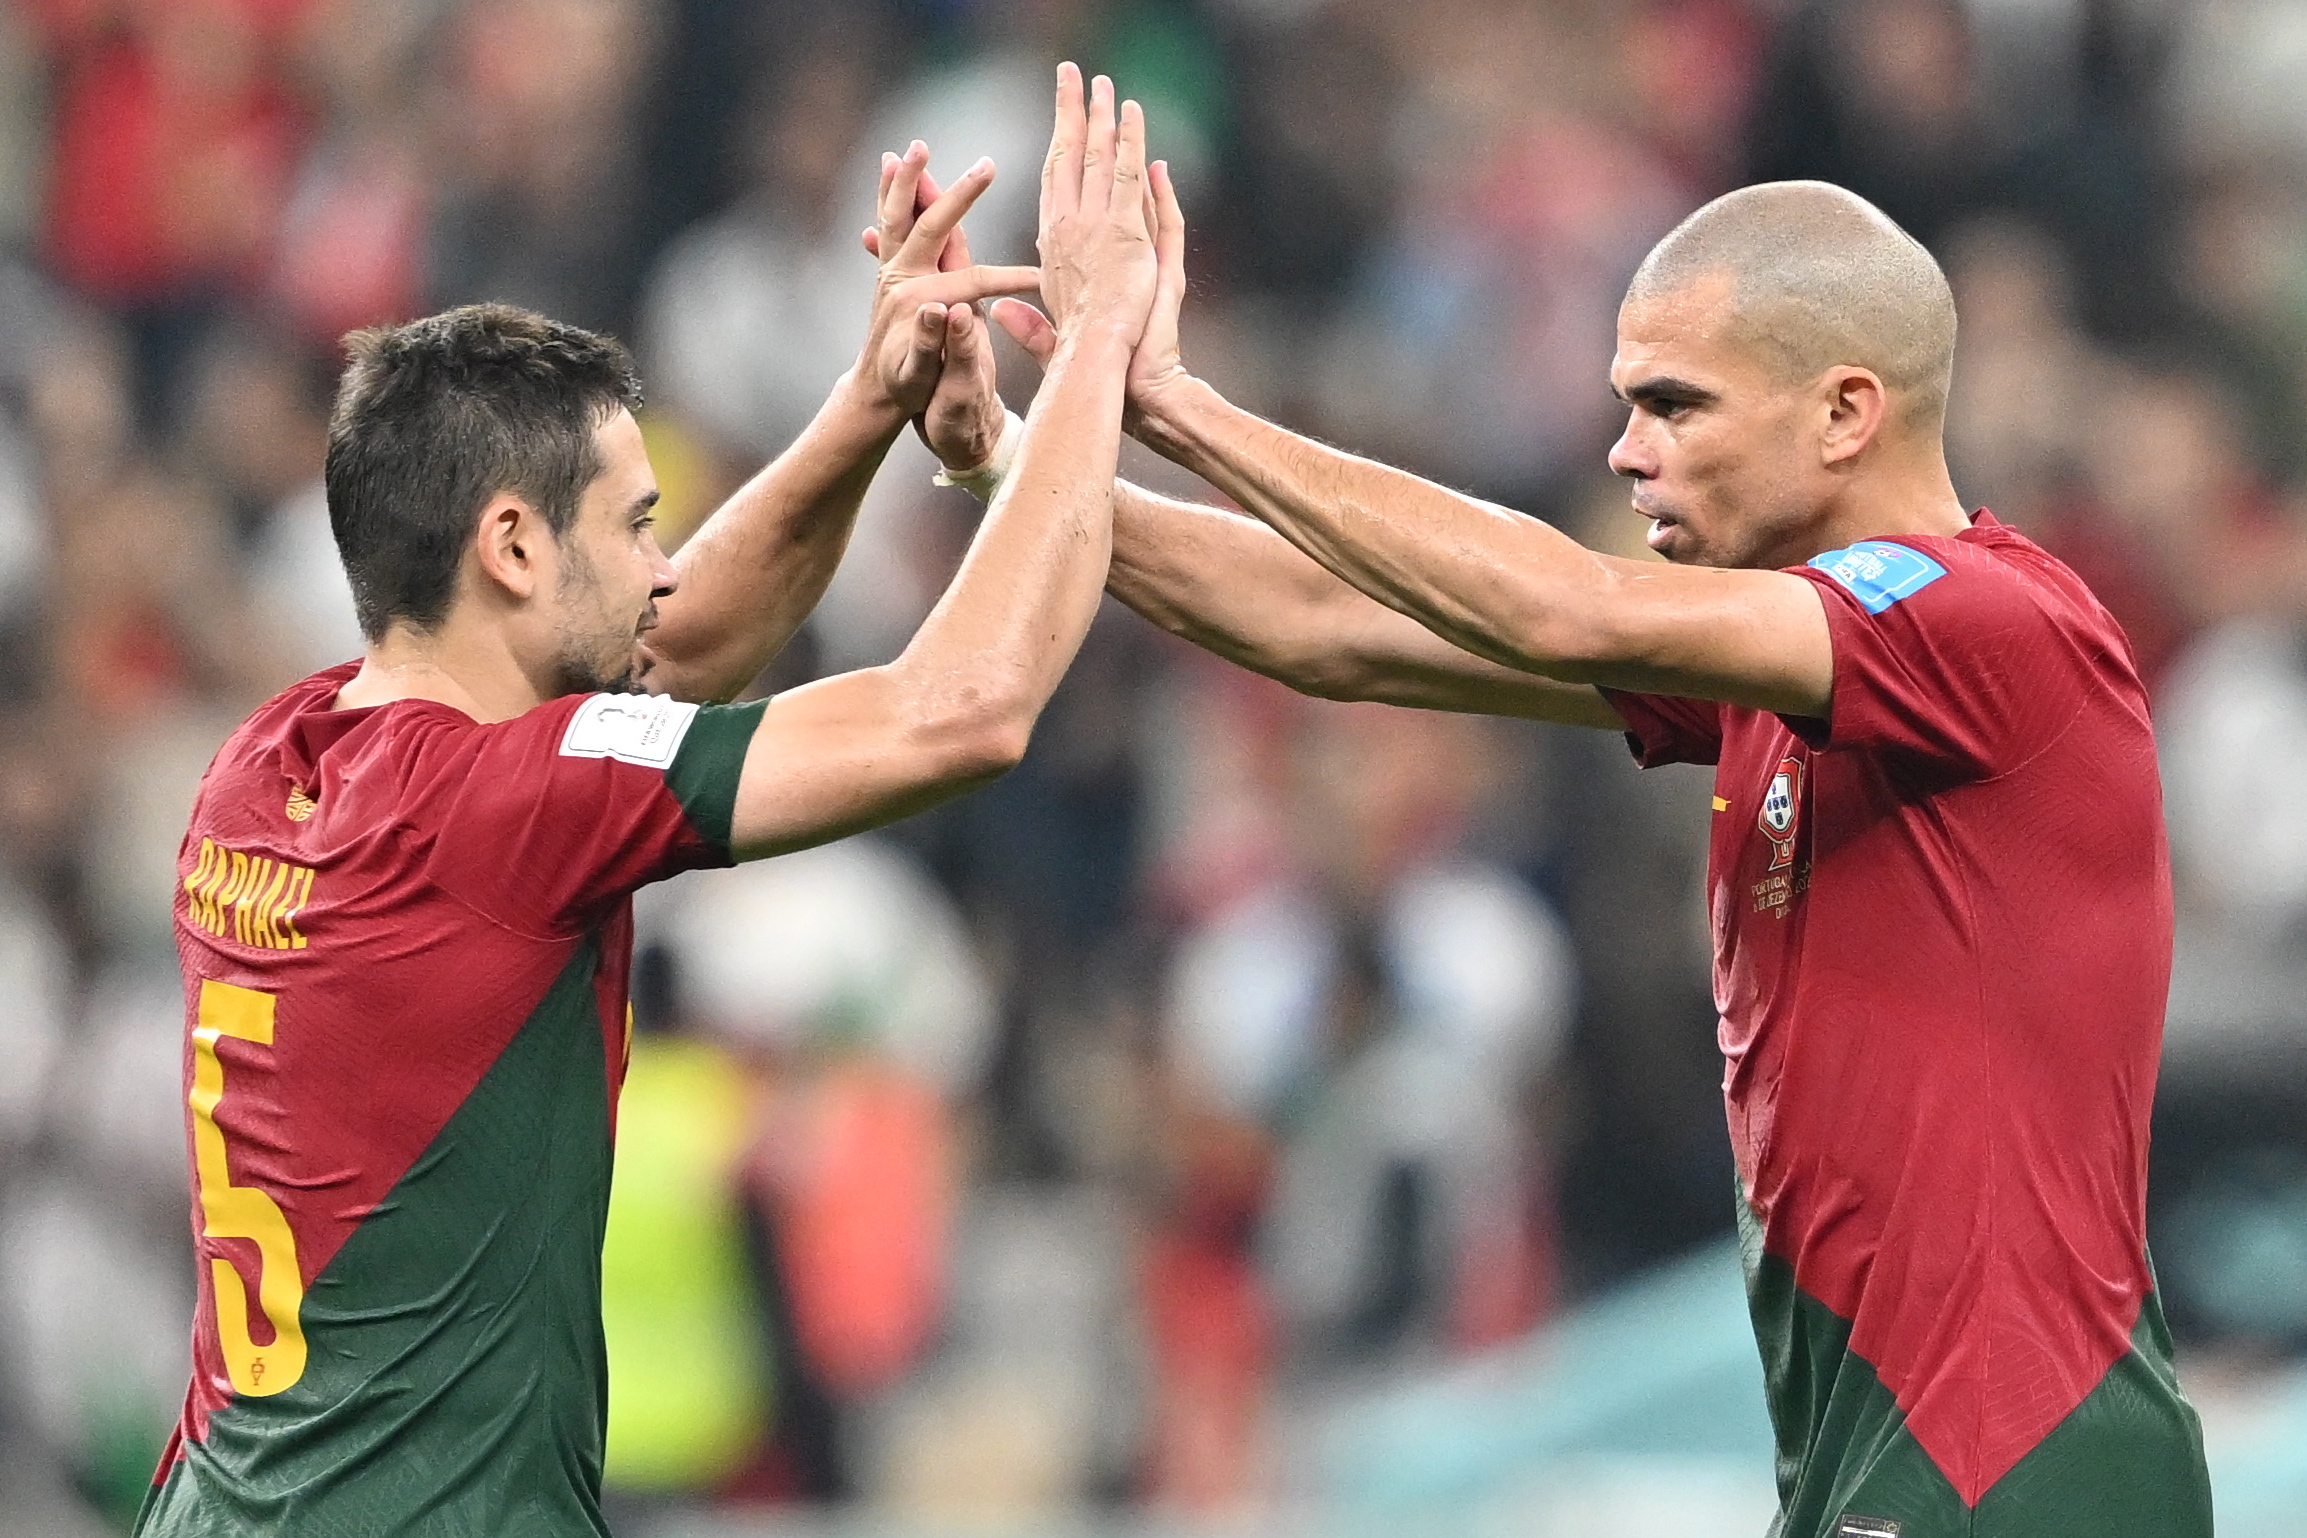 Guerreiro y Pepe celebrando el triunfo de Portugal frente a Suiza en Qatar 2022.